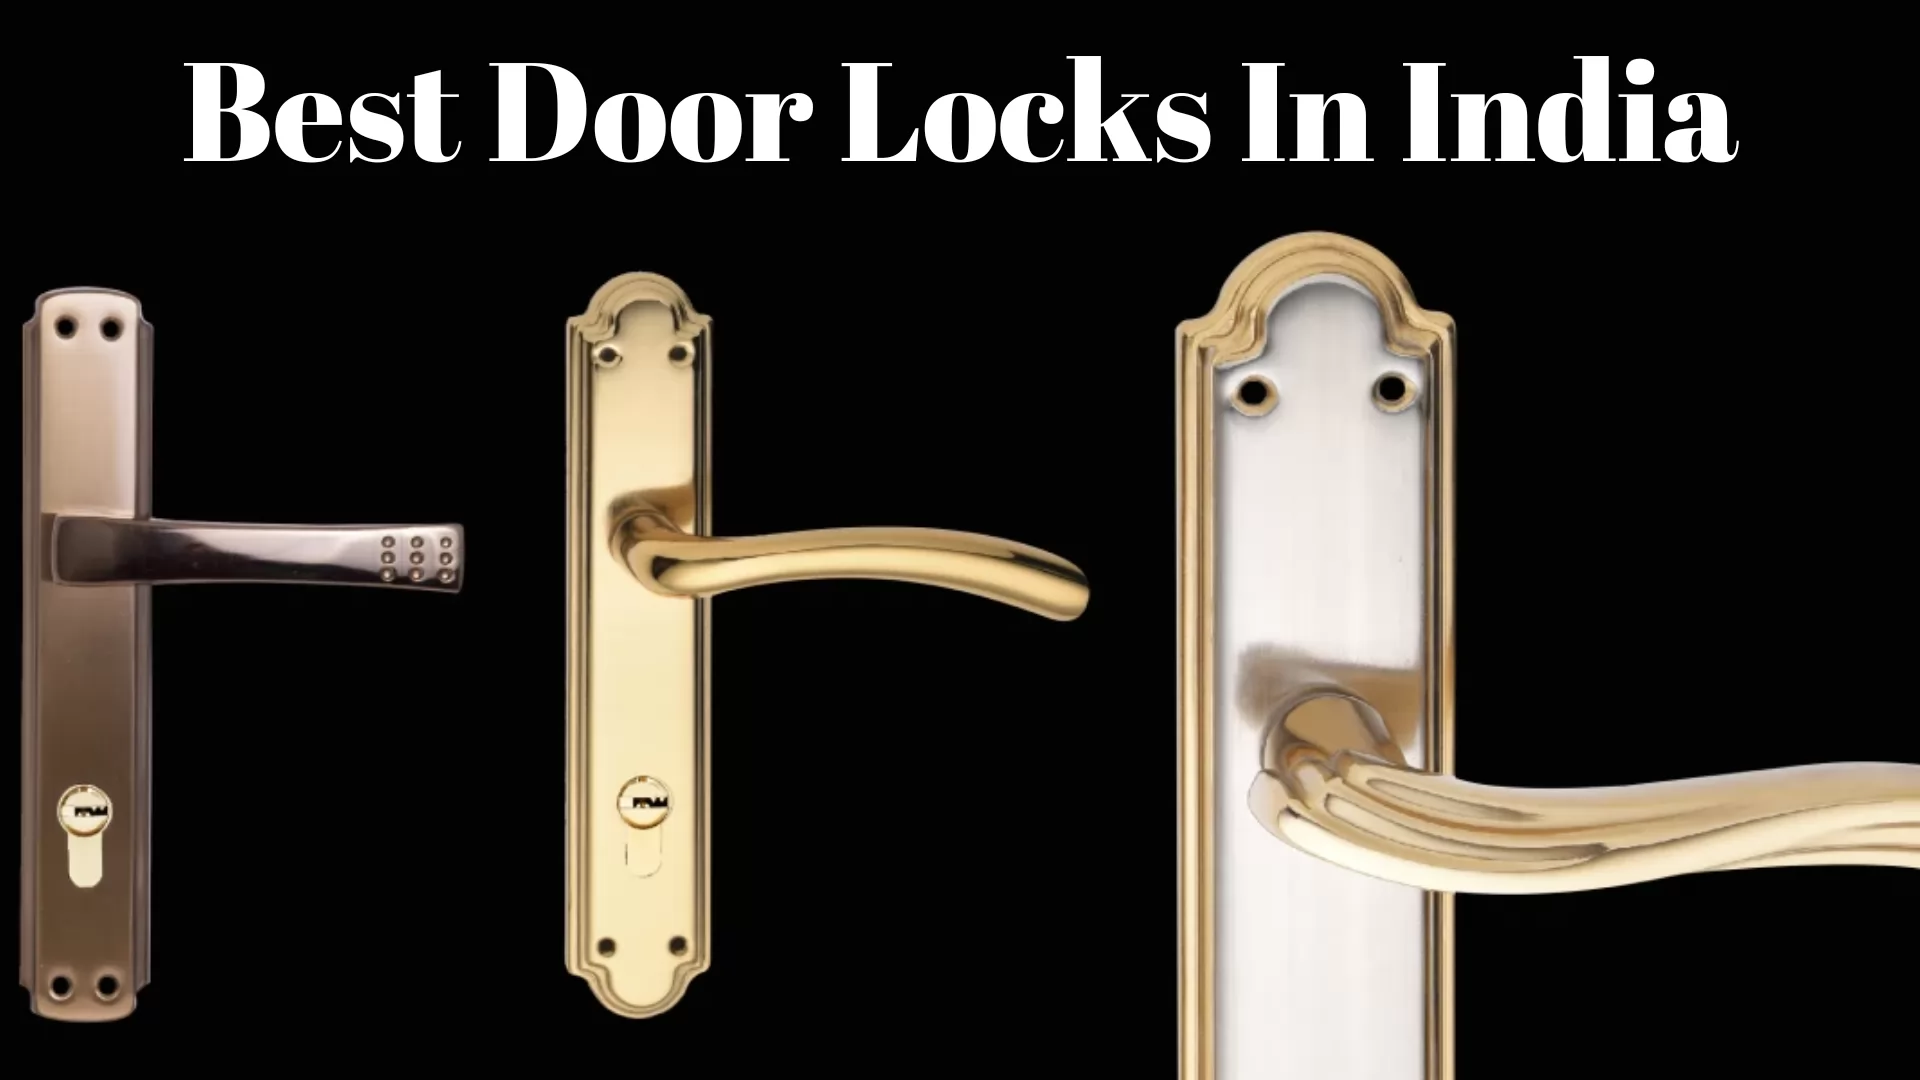 Best door locks in India